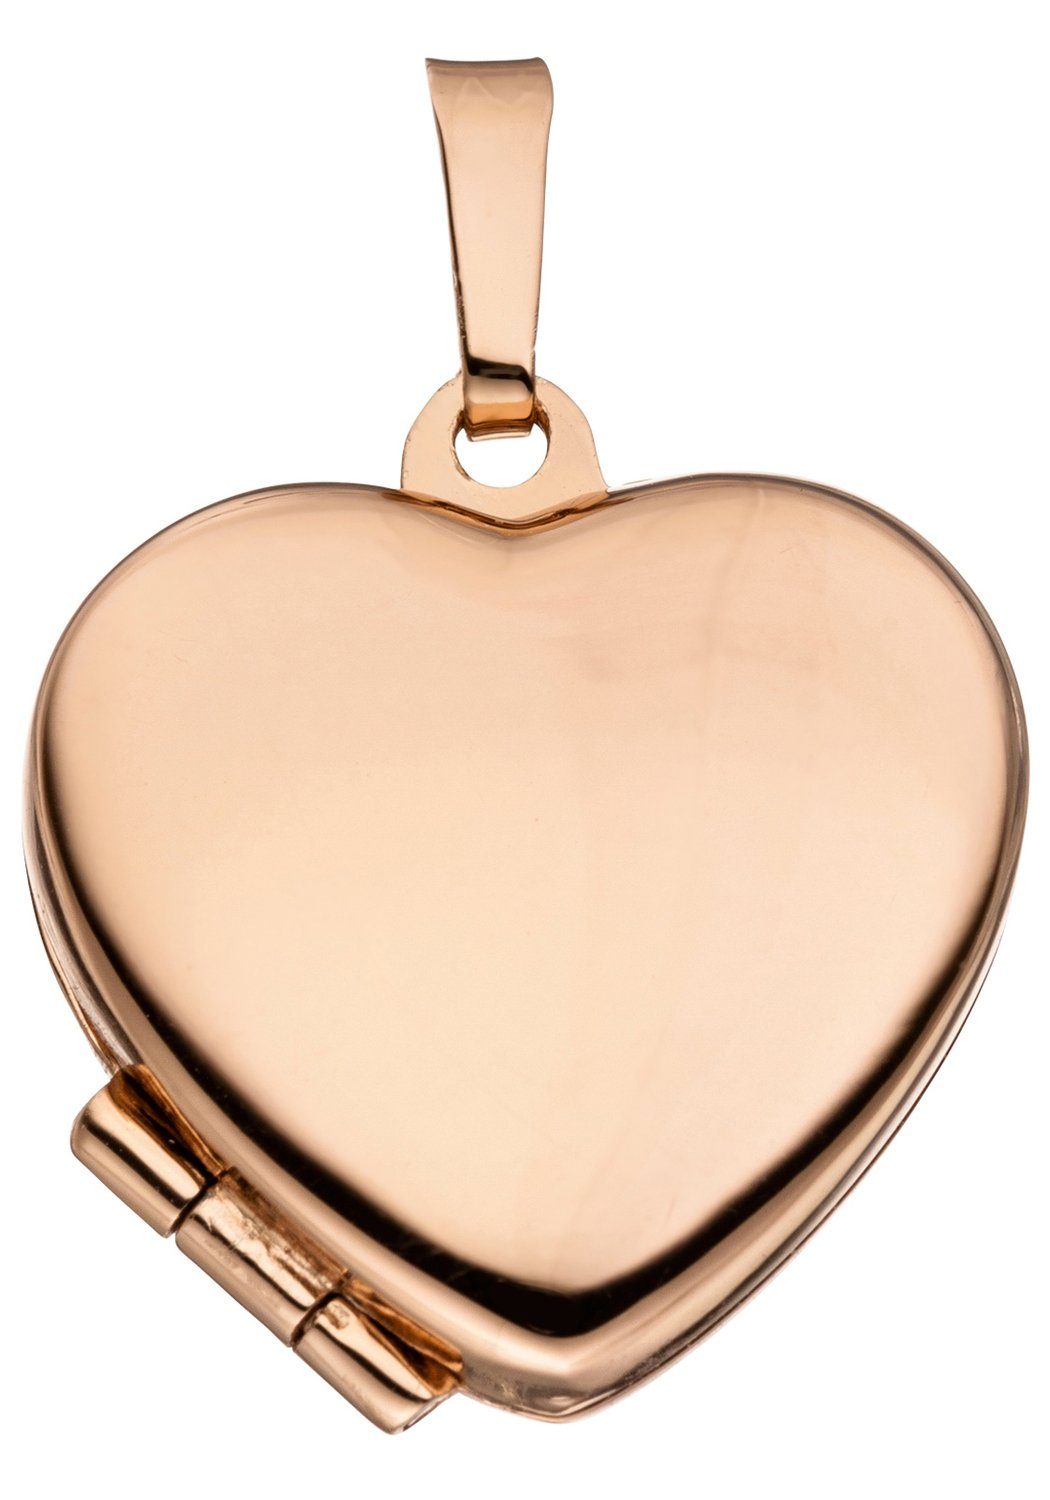 JOBO Medallionanhänger »Anhänger Medaillon Herz«, 925 Silber roségold  vergoldet online kaufen | OTTO